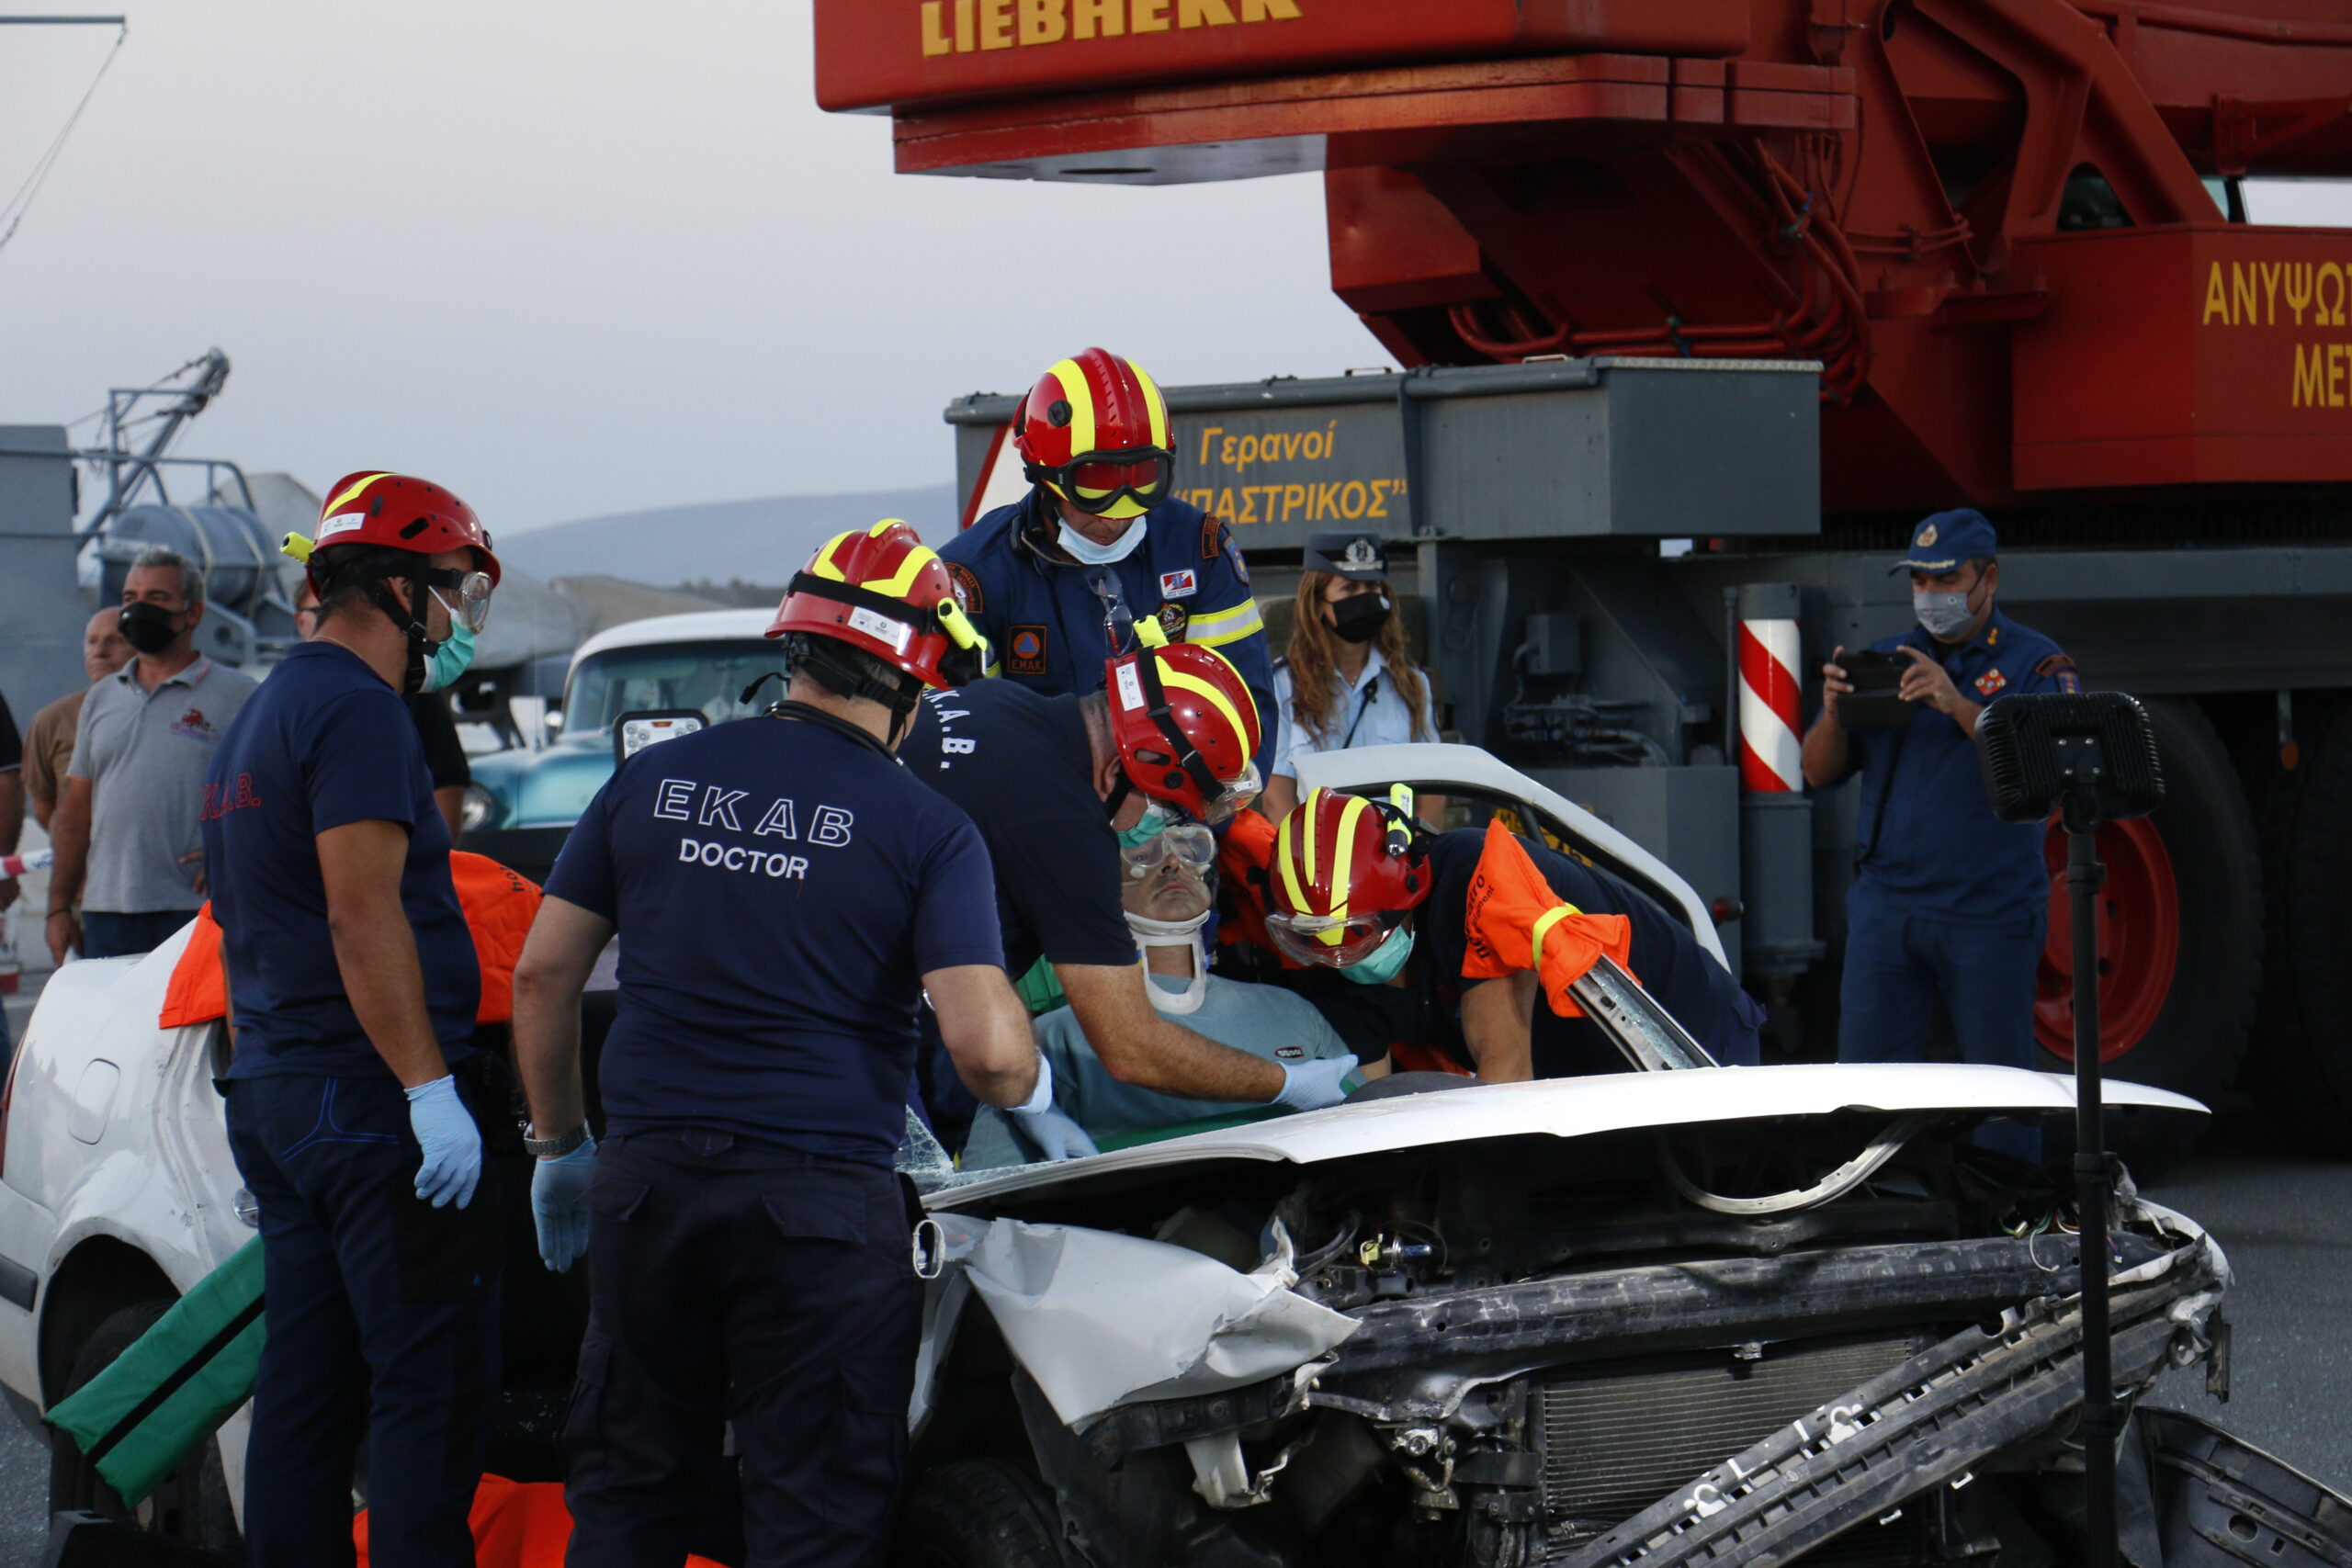 Ηράκλειο: Εθνικός στόχος η μείωση των θυμάτων από τροχαία δυστυχήματα, δήλωσε ο υφυπουργός Προστασίας του Πολίτη